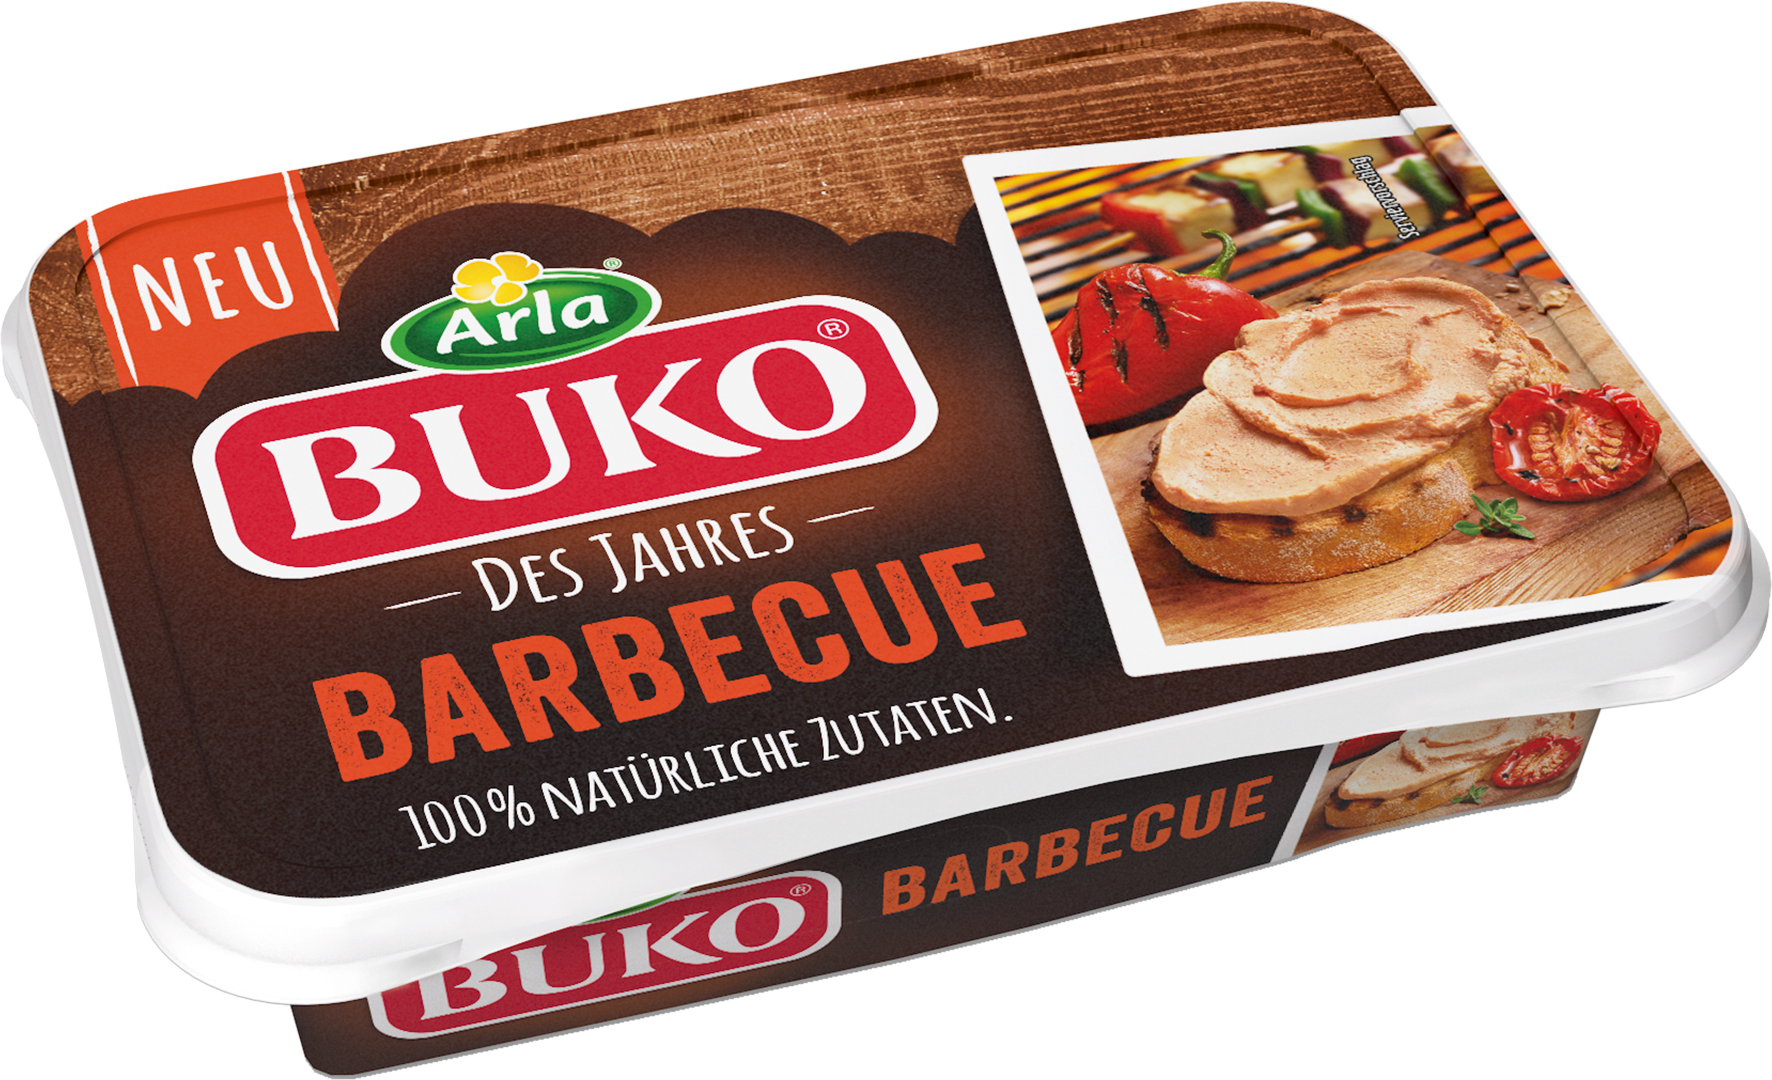 Der neue Arla Buko® des Jahres Barbecue bringt Grillgeschmack ins Kühlregal